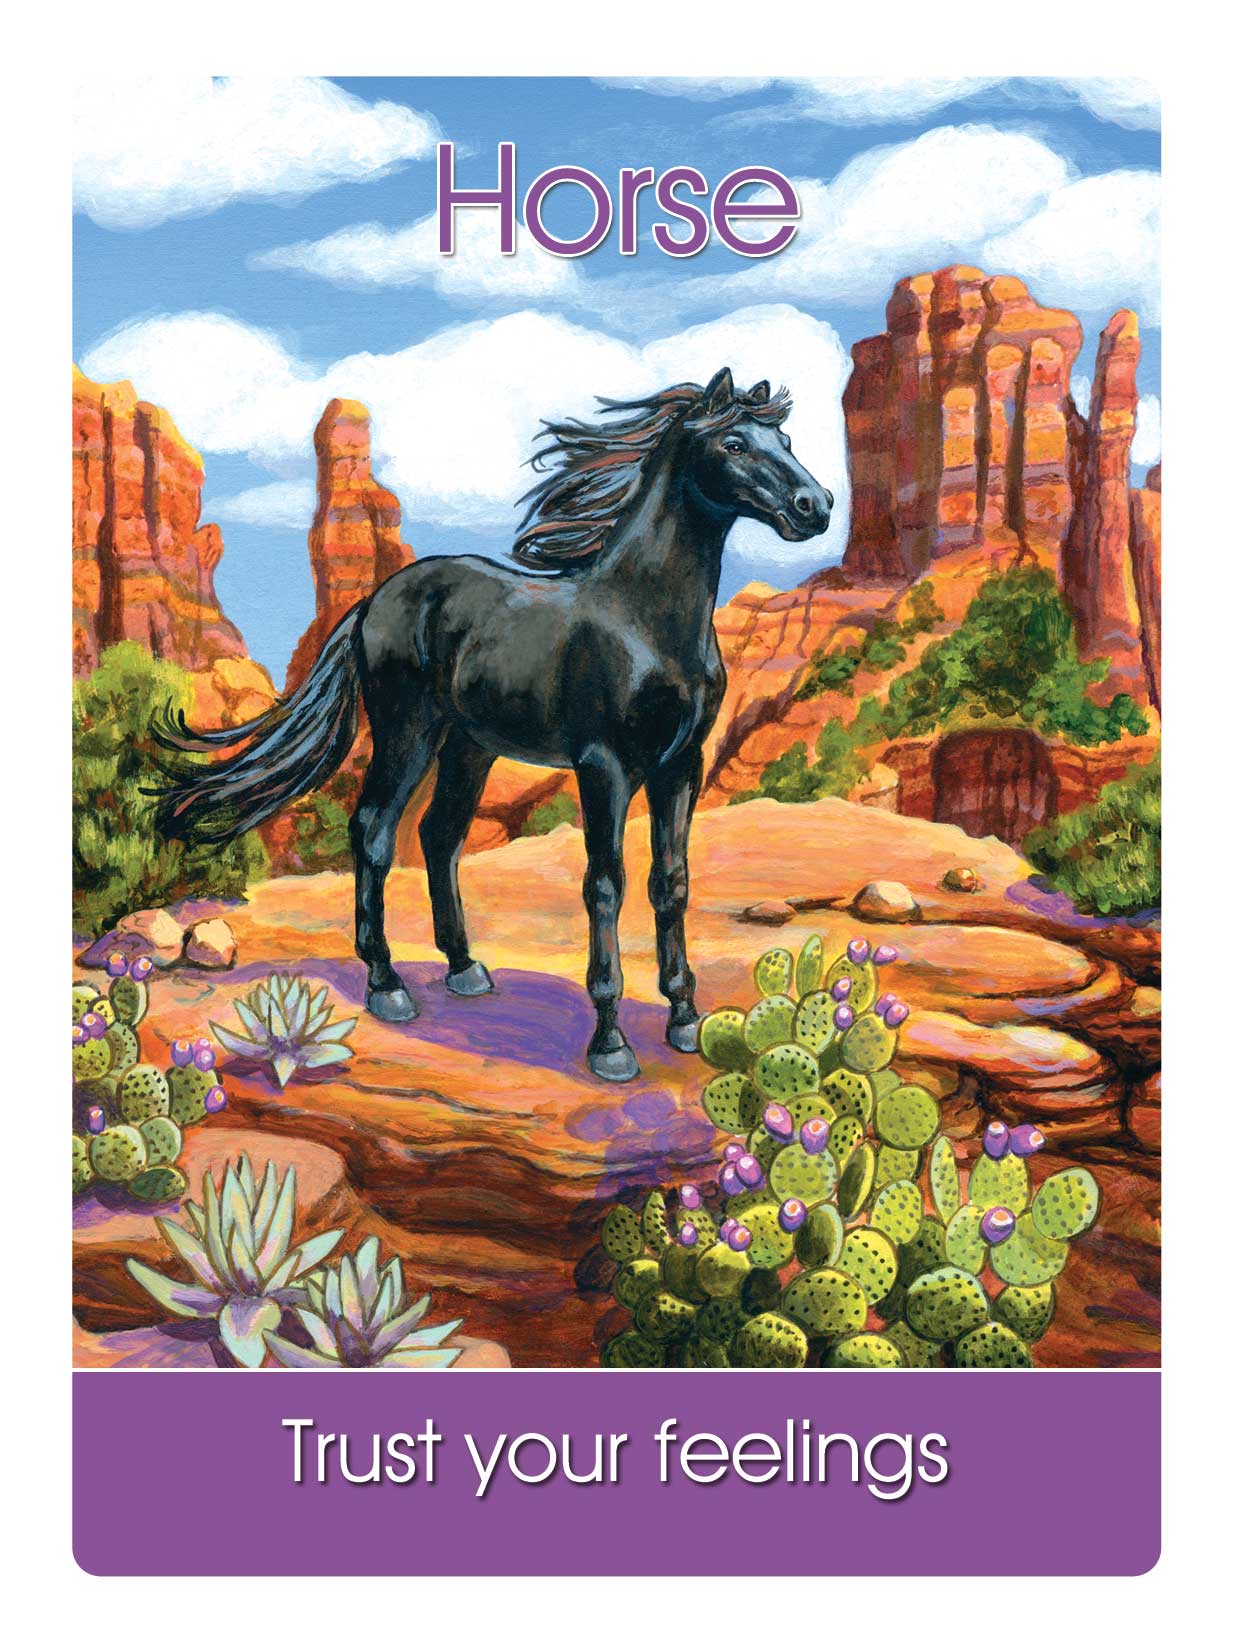 15) Horse Spirit Says: “Trust Your Feelings” - Dr. Steven Farmer